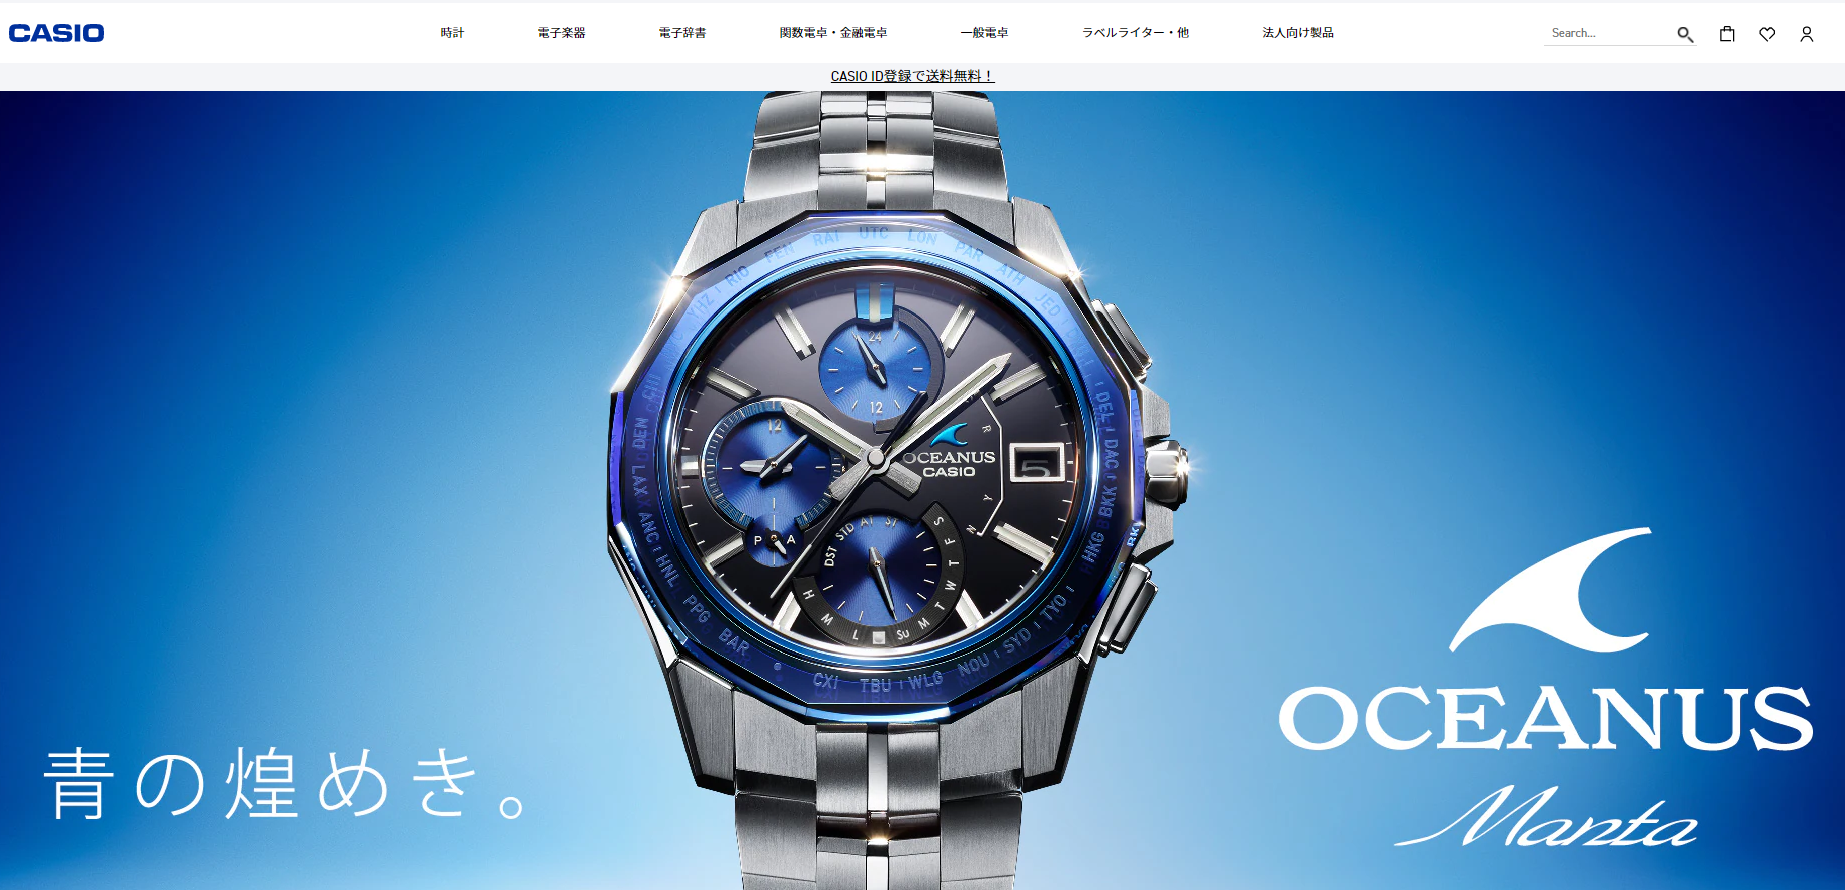 카시오-일본-본사-공식홈페이지-첫화면-푸르고-고급진-손목시계-사진-모습